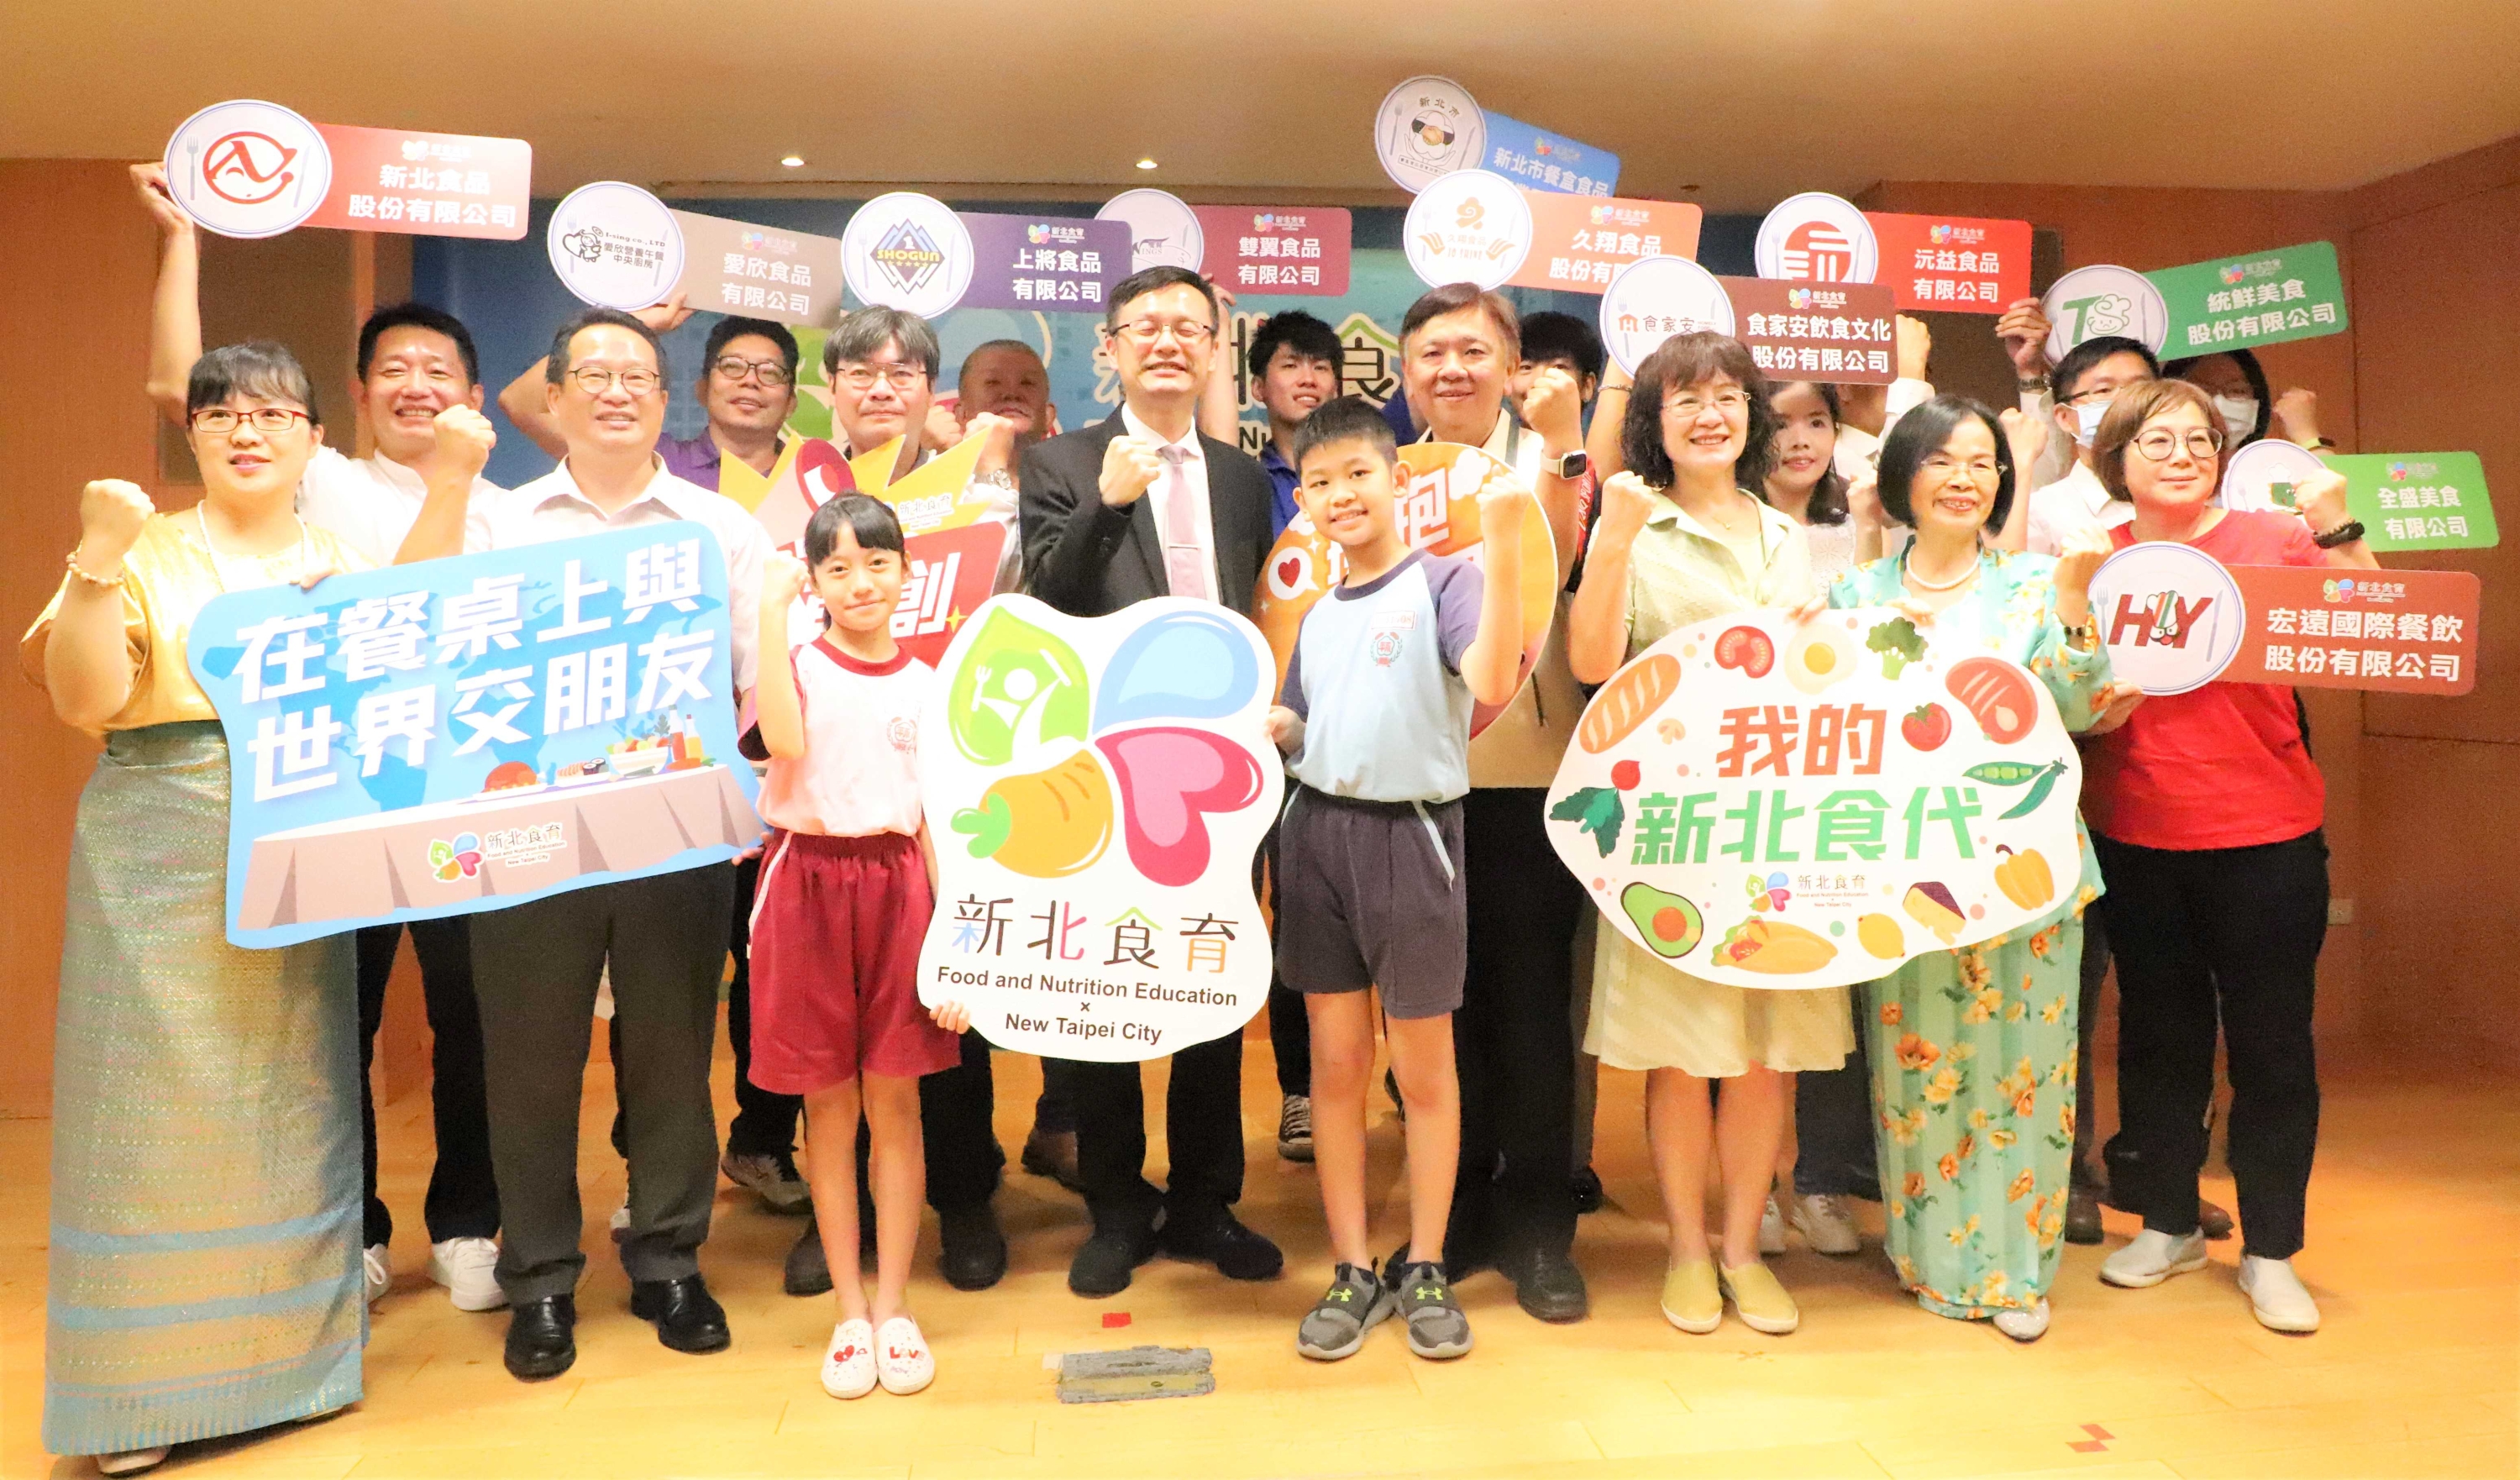 Biro Pendidikan Kota New Taipei mengumumkan bahwa pada tahun ajaran baru, masakan eksotis akan diperkenalkan di sekolah-sekolah, sehingga lebih banyak siswa dapat mengakses makanan internasional.  (Sumber foto : Biro Pendidikan Pemerintah Kota New Taipei)